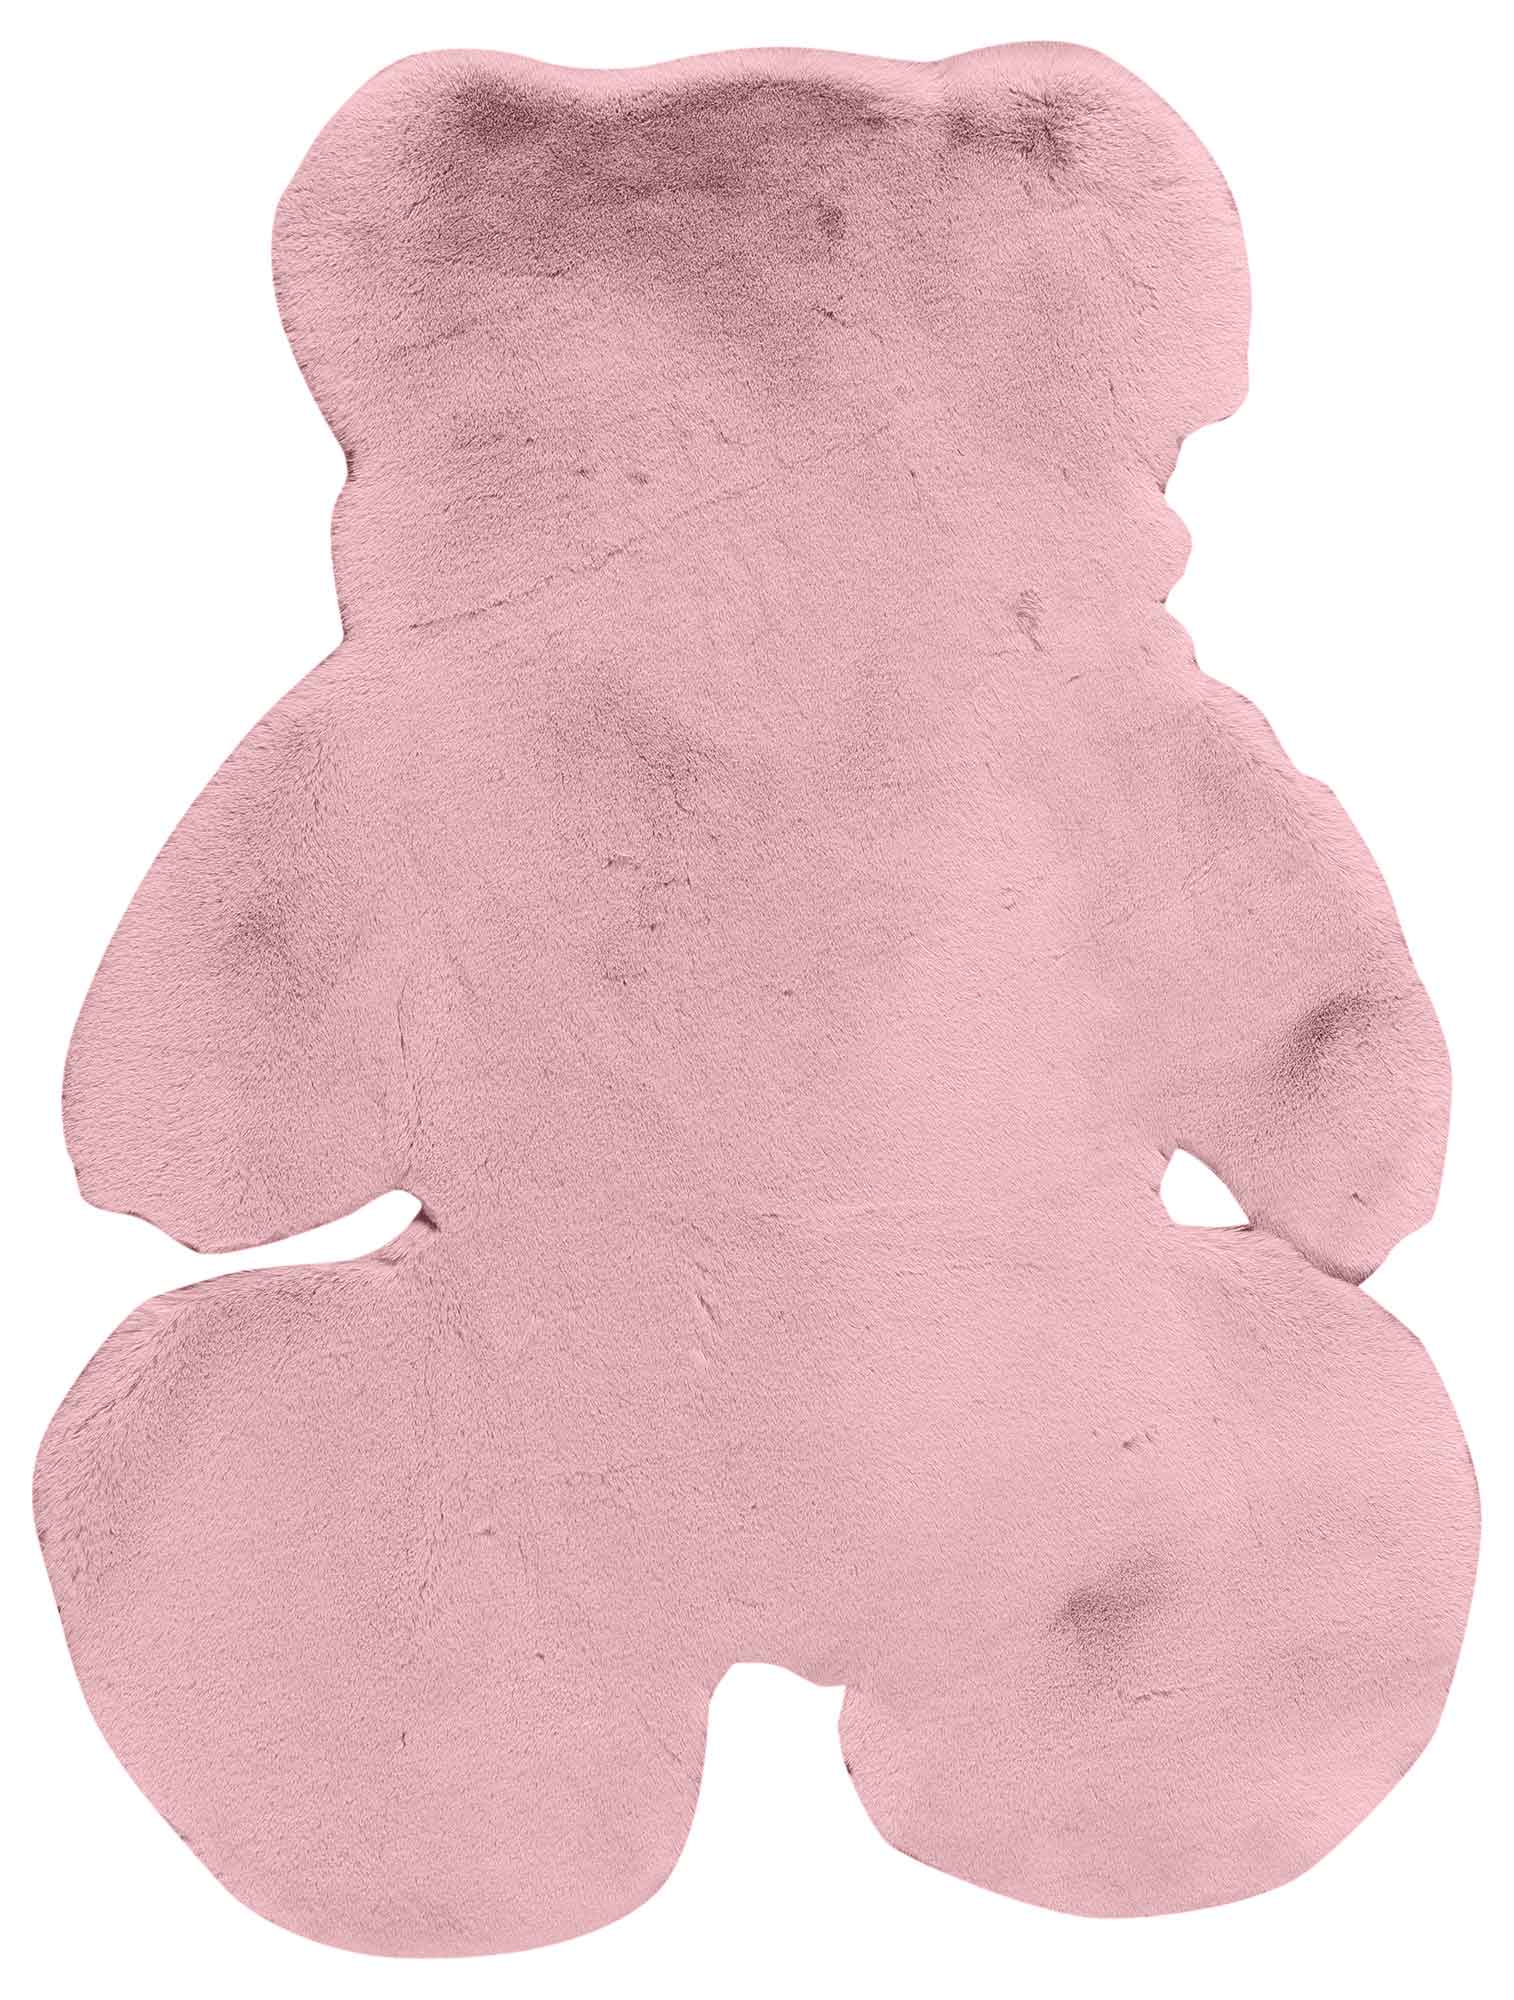 Παιδικό Χαλί SMOOTH PINK TEDDY BEAR από την εταιρεία Madi